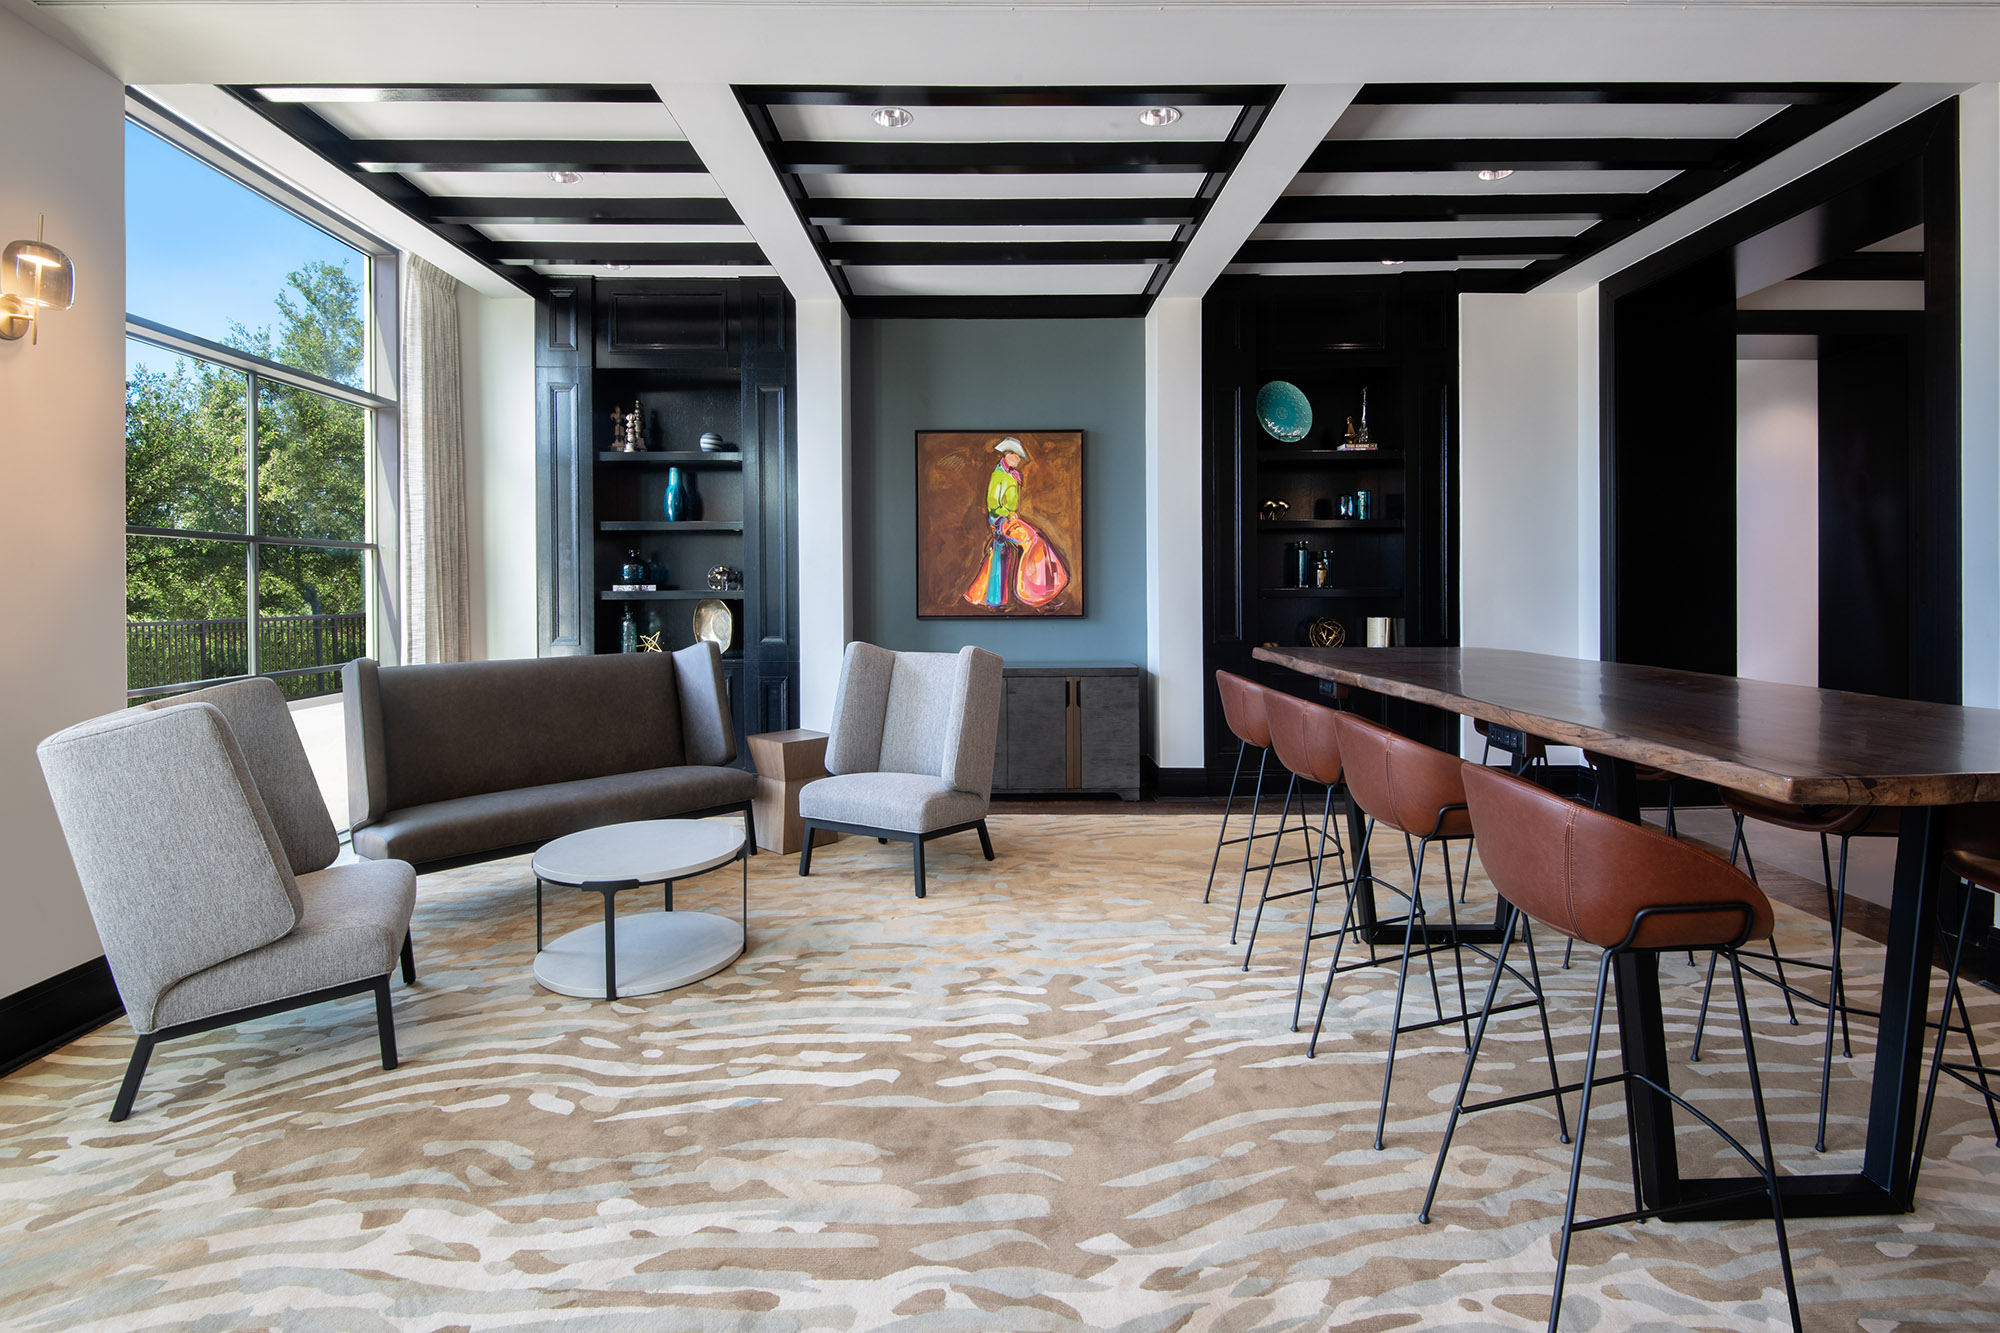 Art of Floors offers custom area rugs, hospitality rugs, custom rugs, custom carpet, hotel carpet, and custom flooring